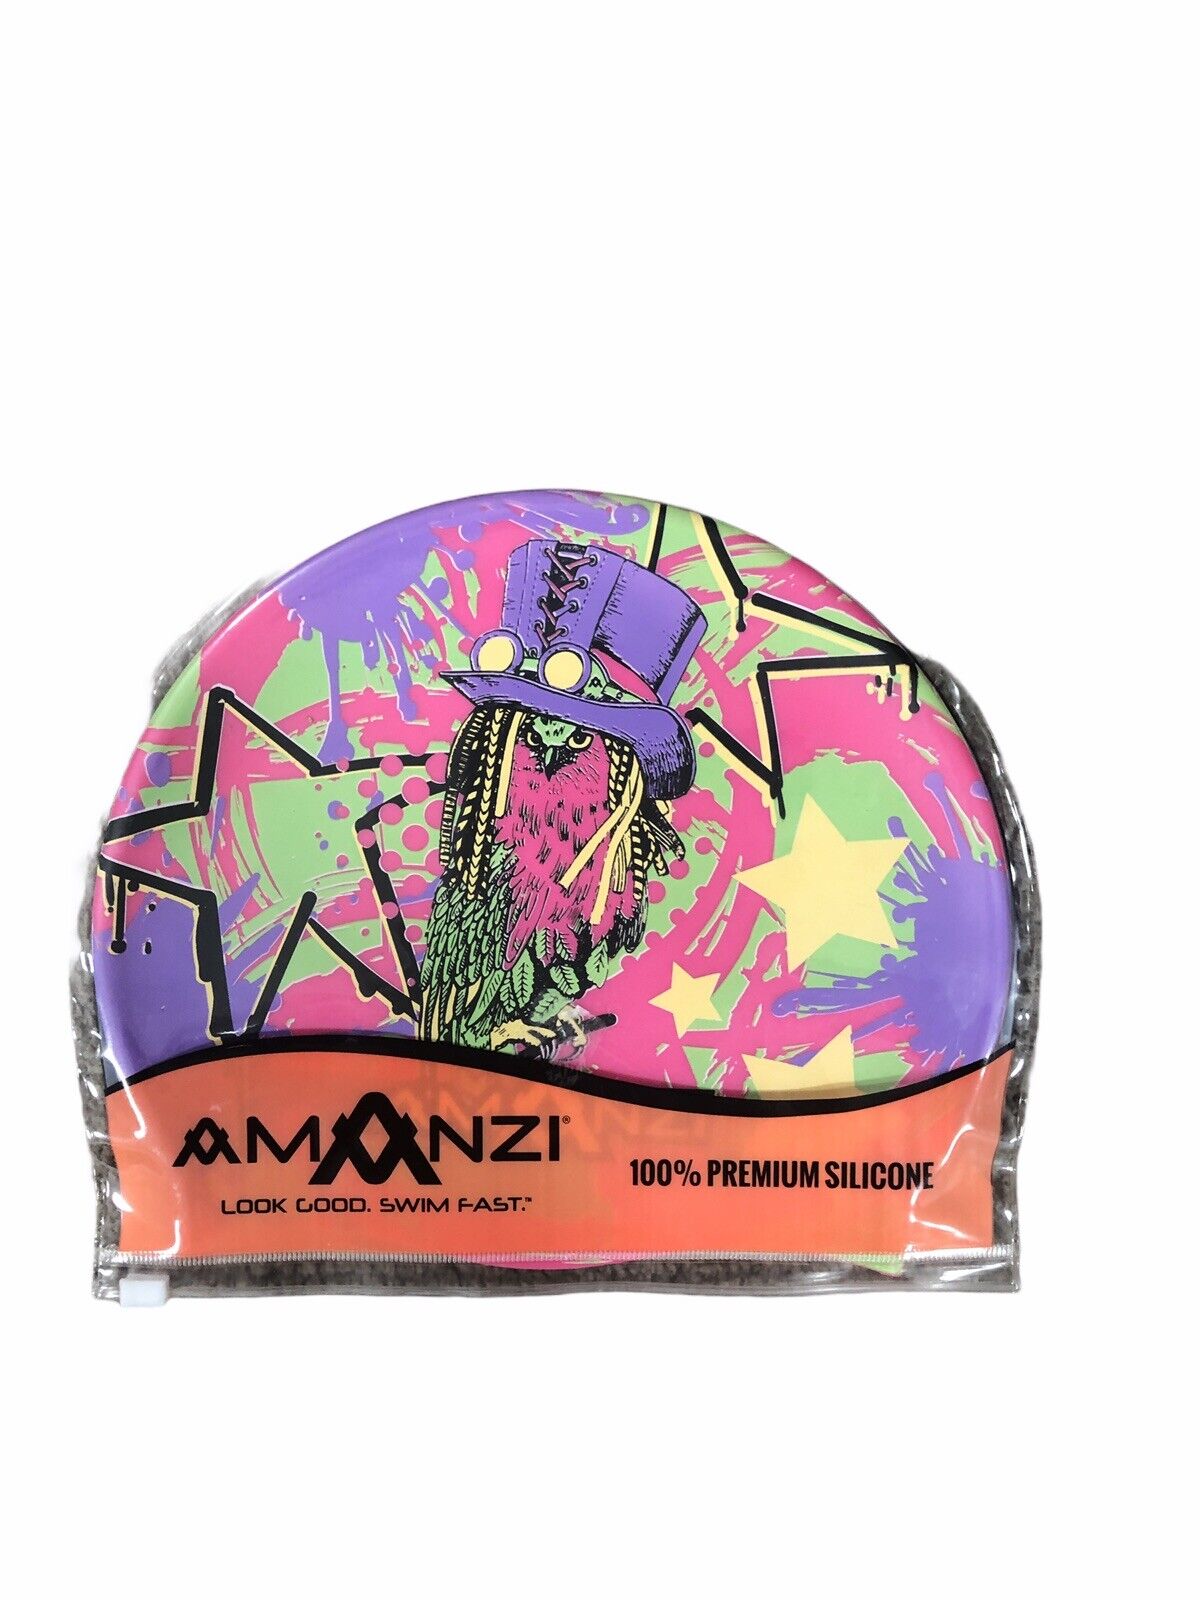 Now on sale Amanzi Retro Vintage Silicon Swim Cap Credence